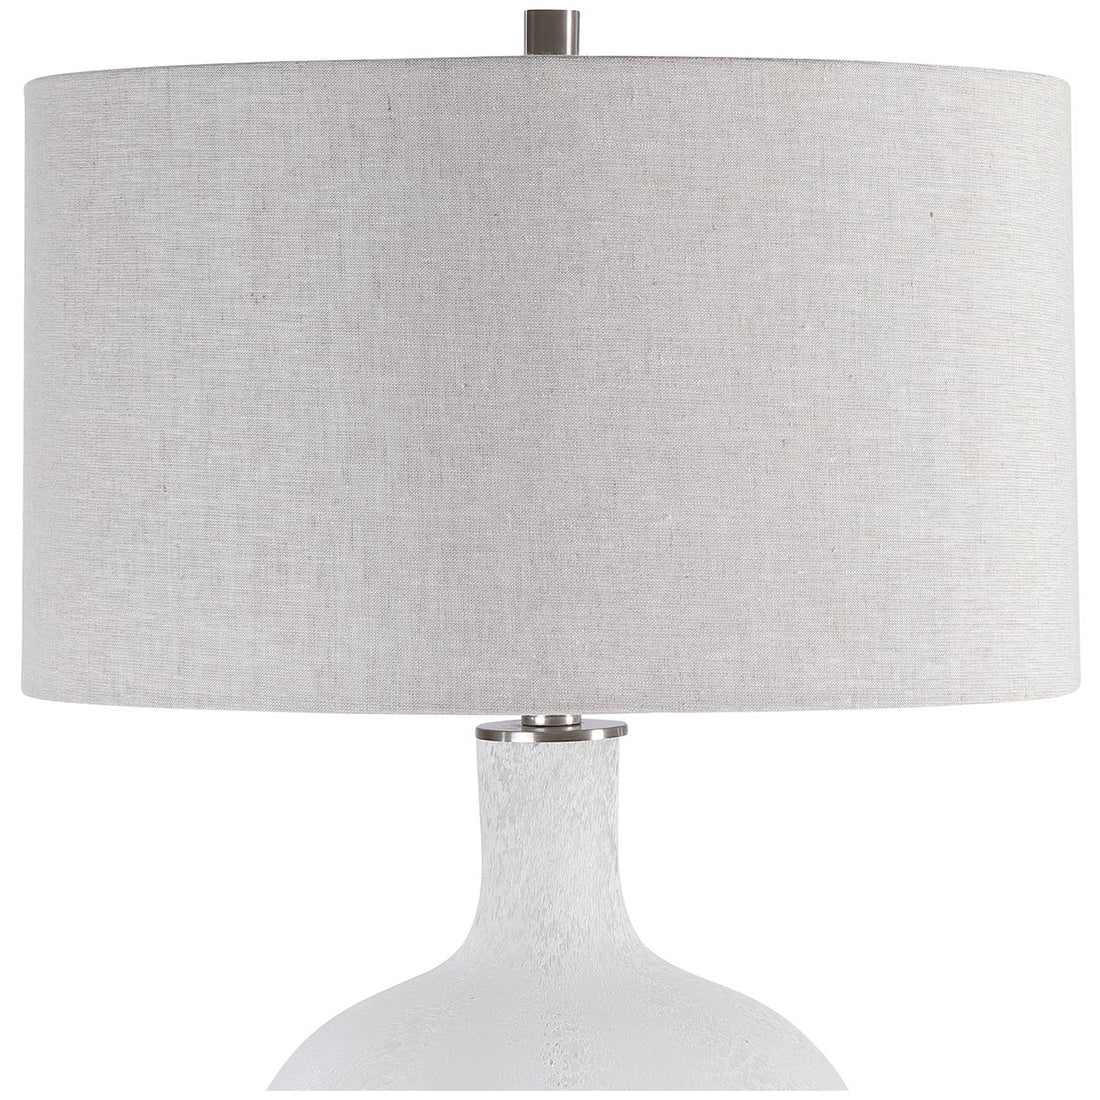 Uttermost Whiteout Mottled Glass Table Lamp